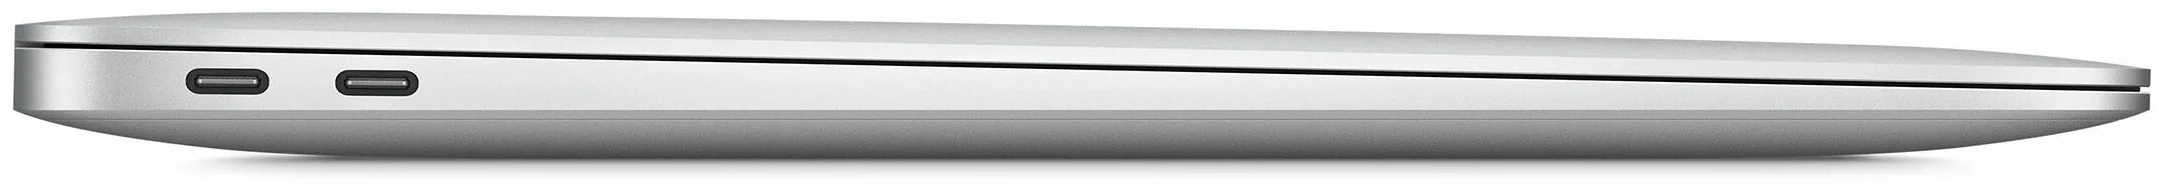 13.3" Apple MacBook Air 13 Late 2020 - беспроводная связь: Wi-Fi 802.11ax, Bluetooth